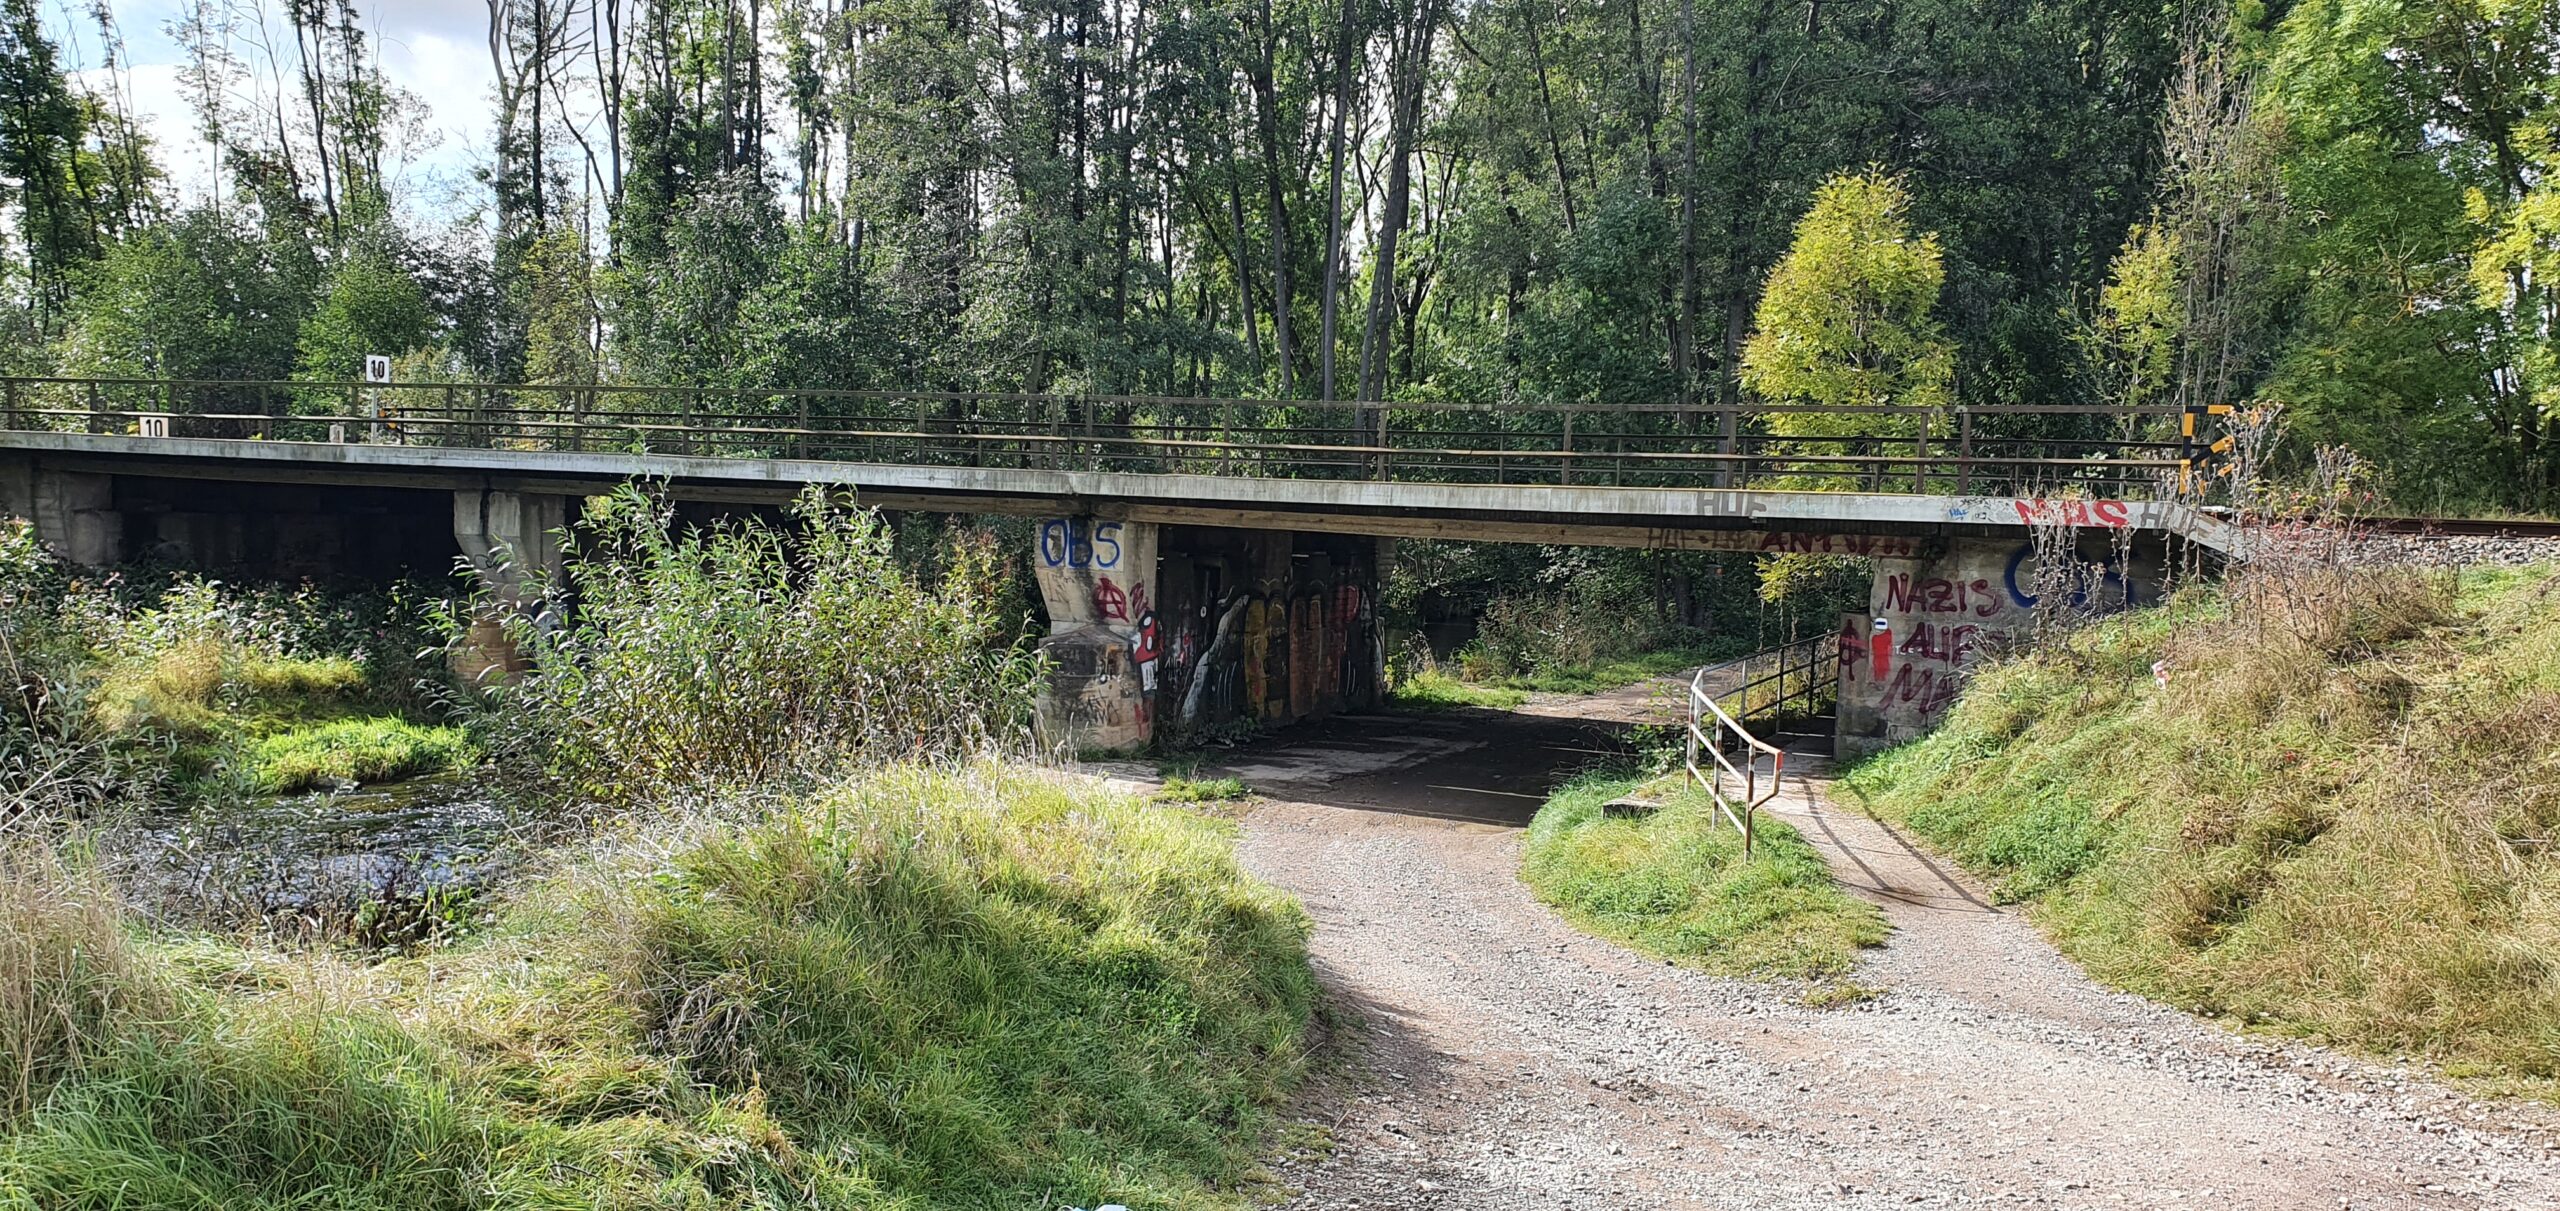 Gesamtaufnahme einer alten Bahnbrücke. Die Brücke führt über einen Fluss und einen unbefestigten Weg.